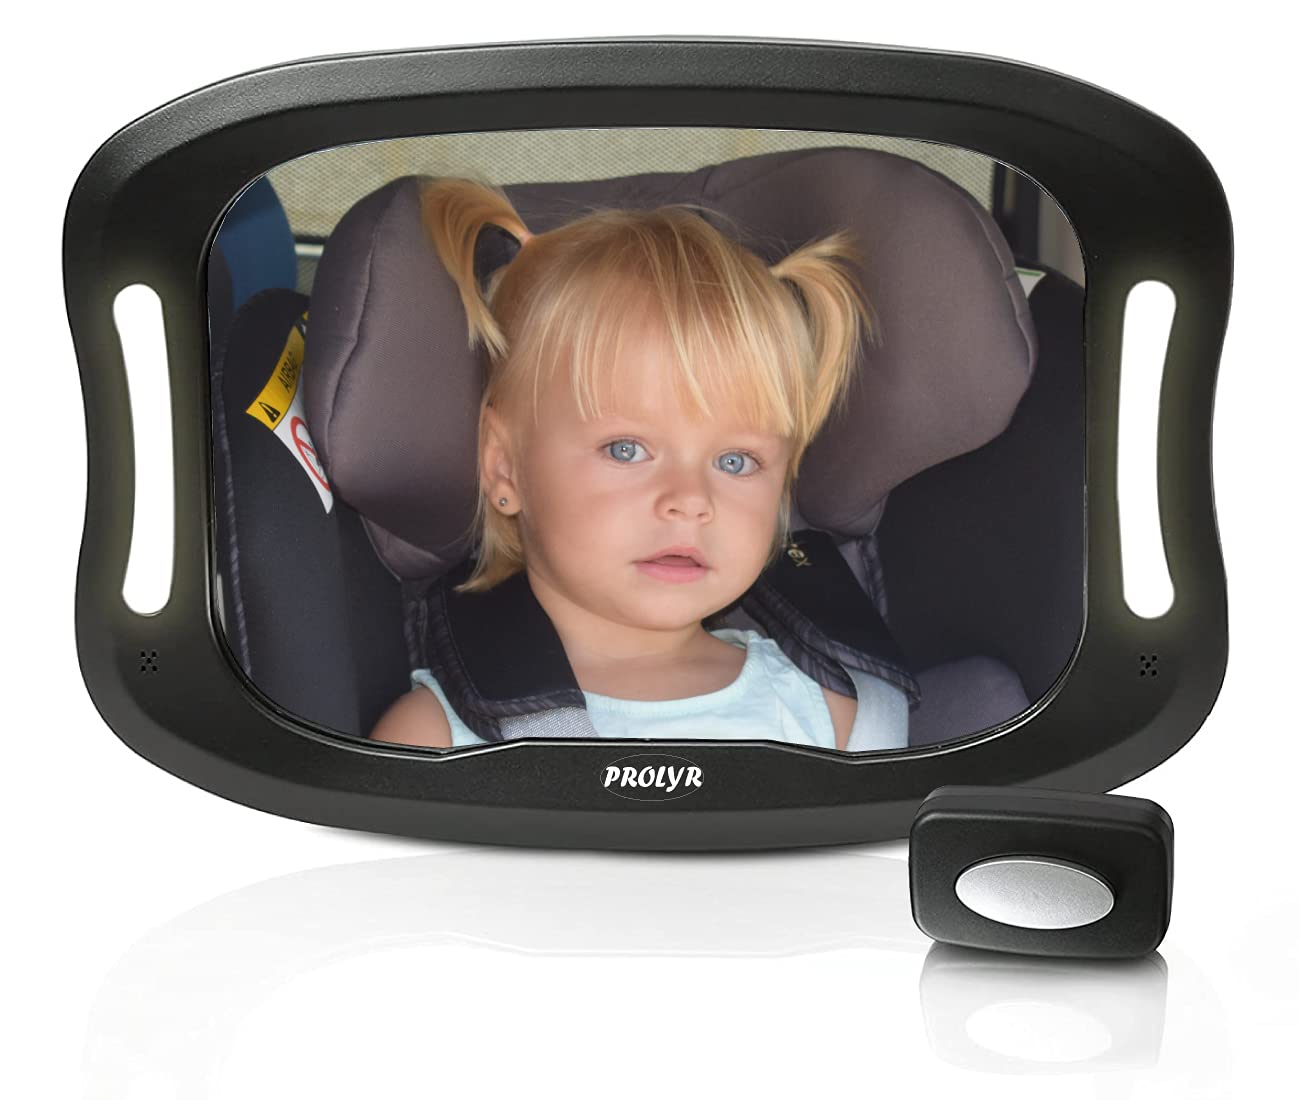 Prolyr Baby Auto Rückspiegel LED - Rücksitzspiegel für Baby Auto, LED Licht, Sicher, Unzerbrechlich, Fernbedienung, Einfache Installation, Universell, 360° Drehung, Neues Design (Schwarz) von PROLYR